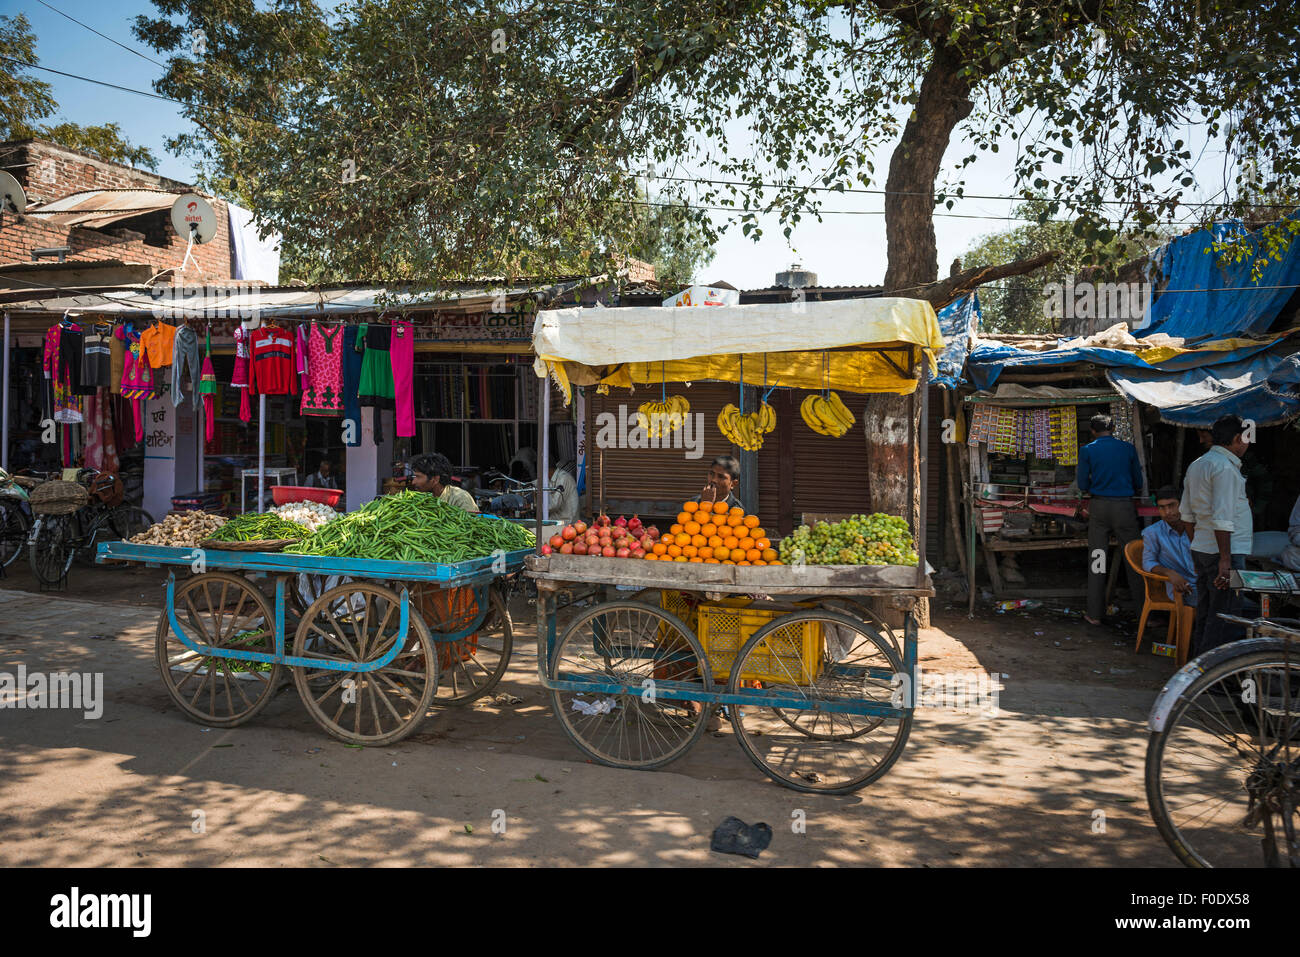 La vita quotidiana in una piccola città in India Foto Stock